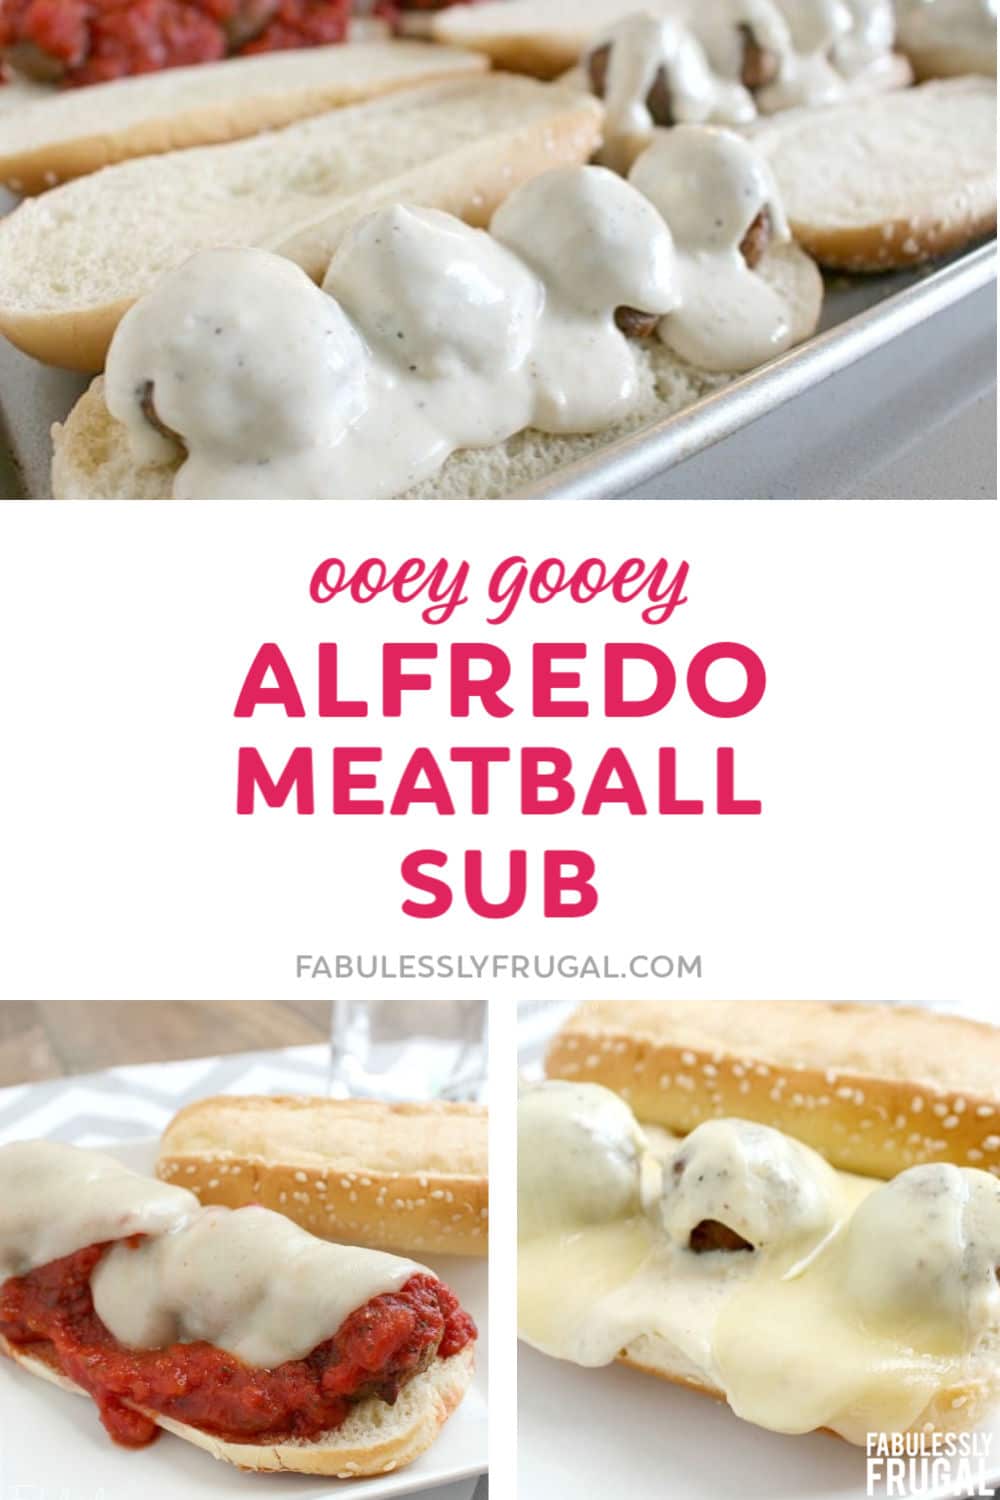 Alfredo meatball sub recipe